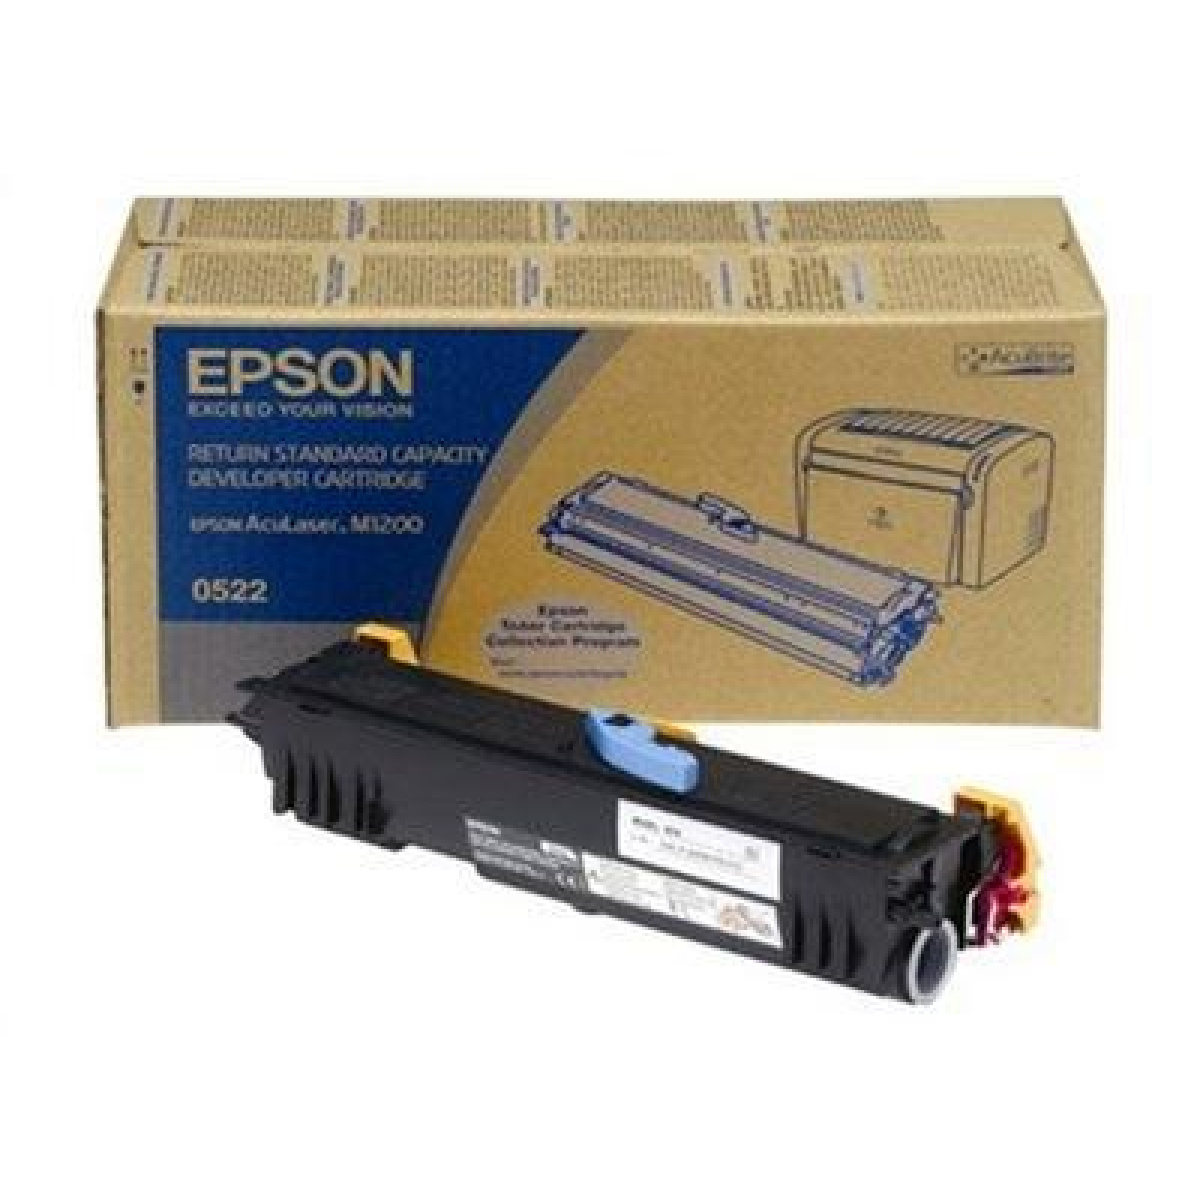 Developer Epson C13S050522 black 1800pgs